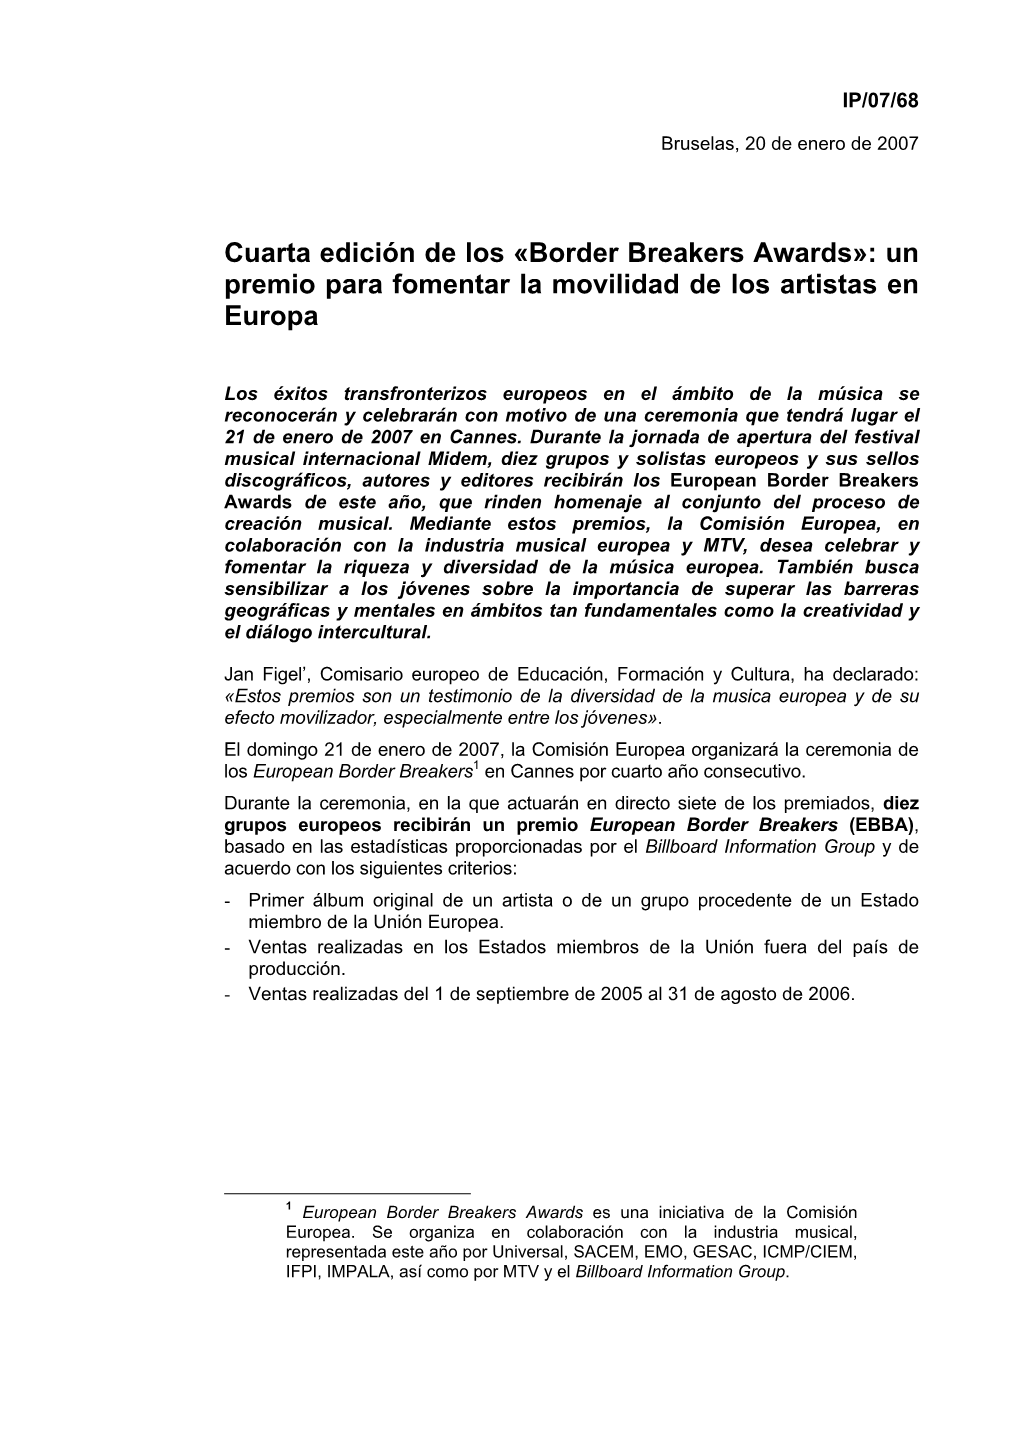 Border Breakers Awards»: Un Premio Para Fomentar La Movilidad De Los Artistas En Europa